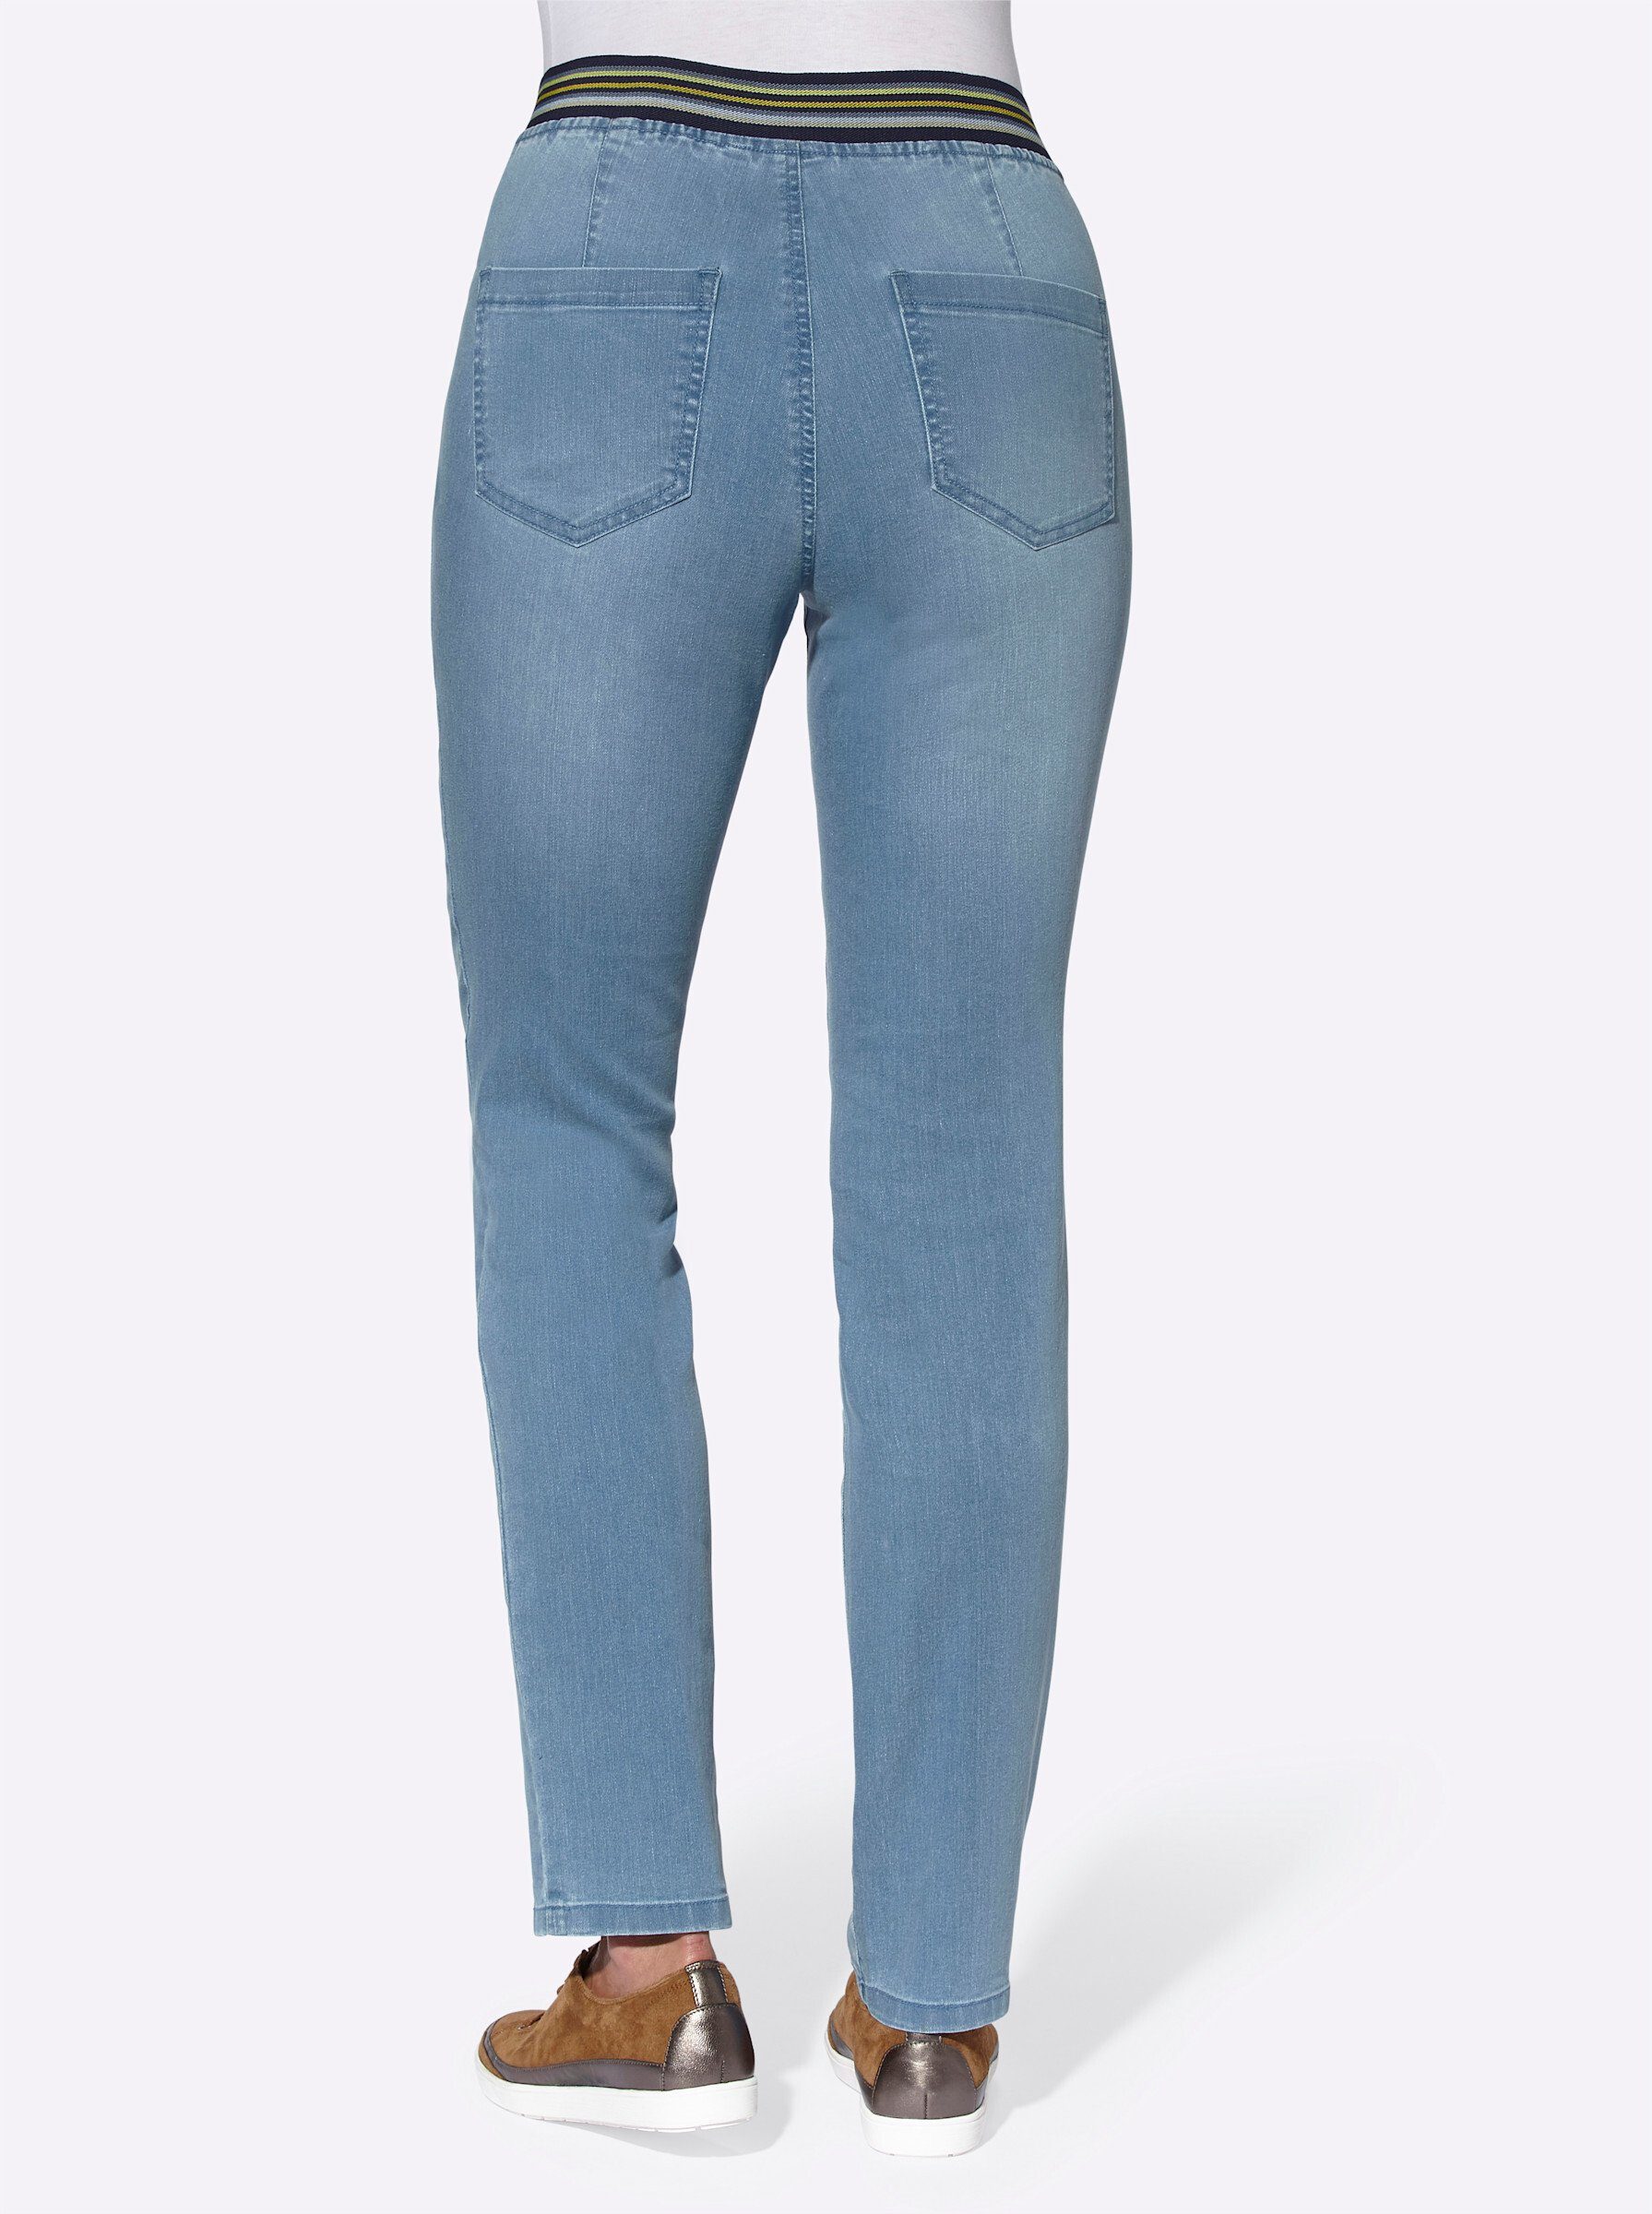 Jeans blue-bleached Bequeme an! Sieh